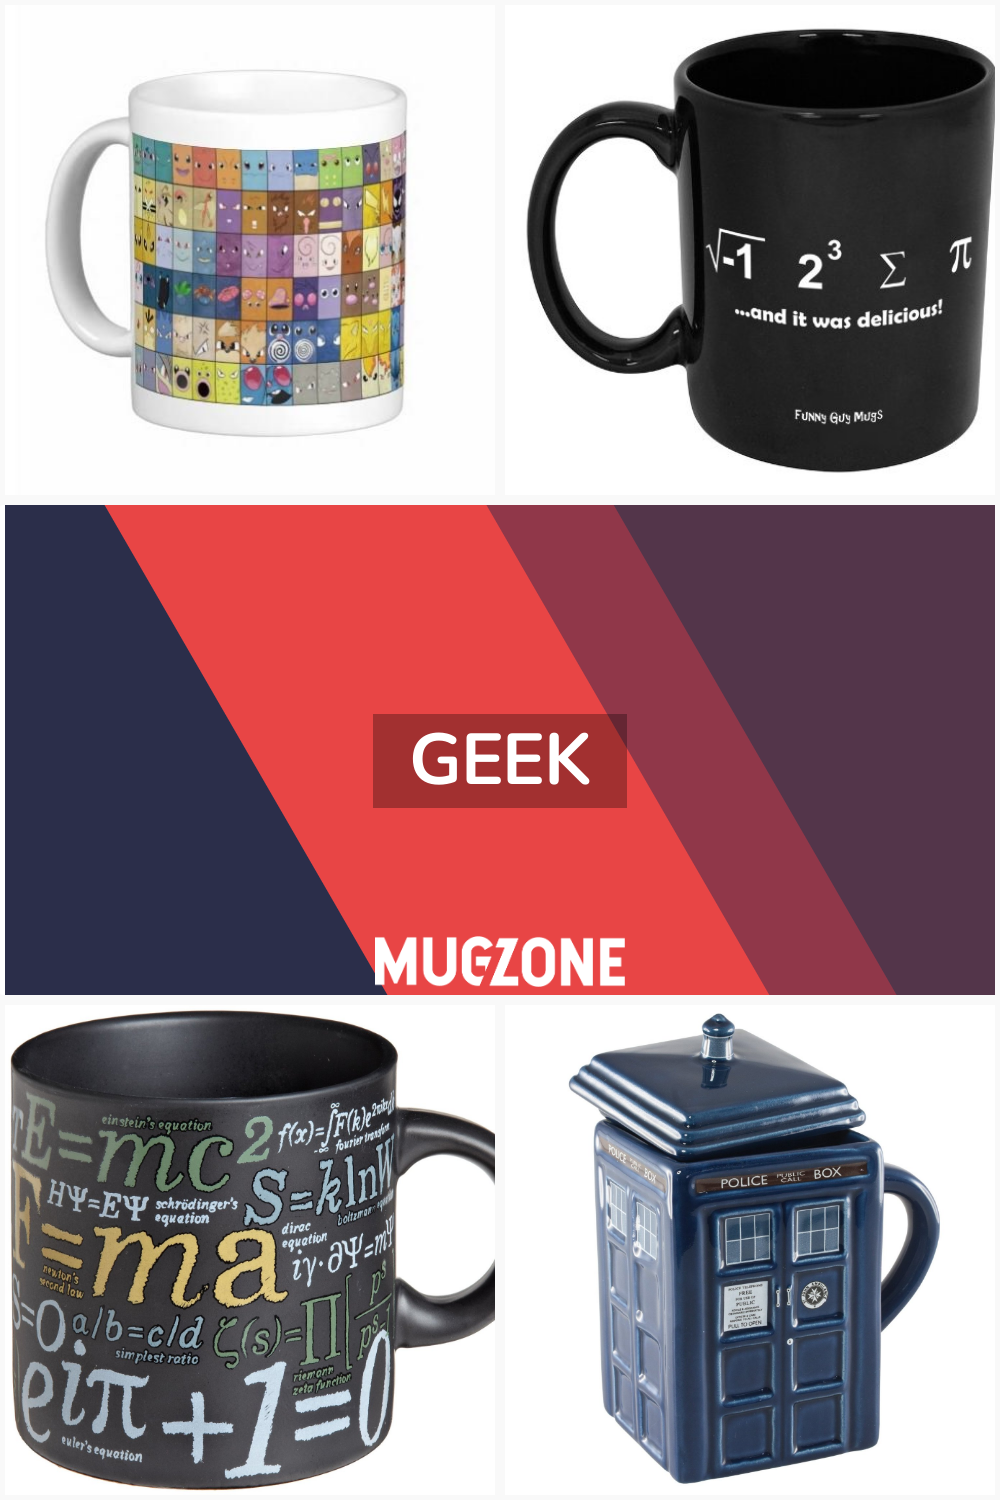 geek // Mug Zone